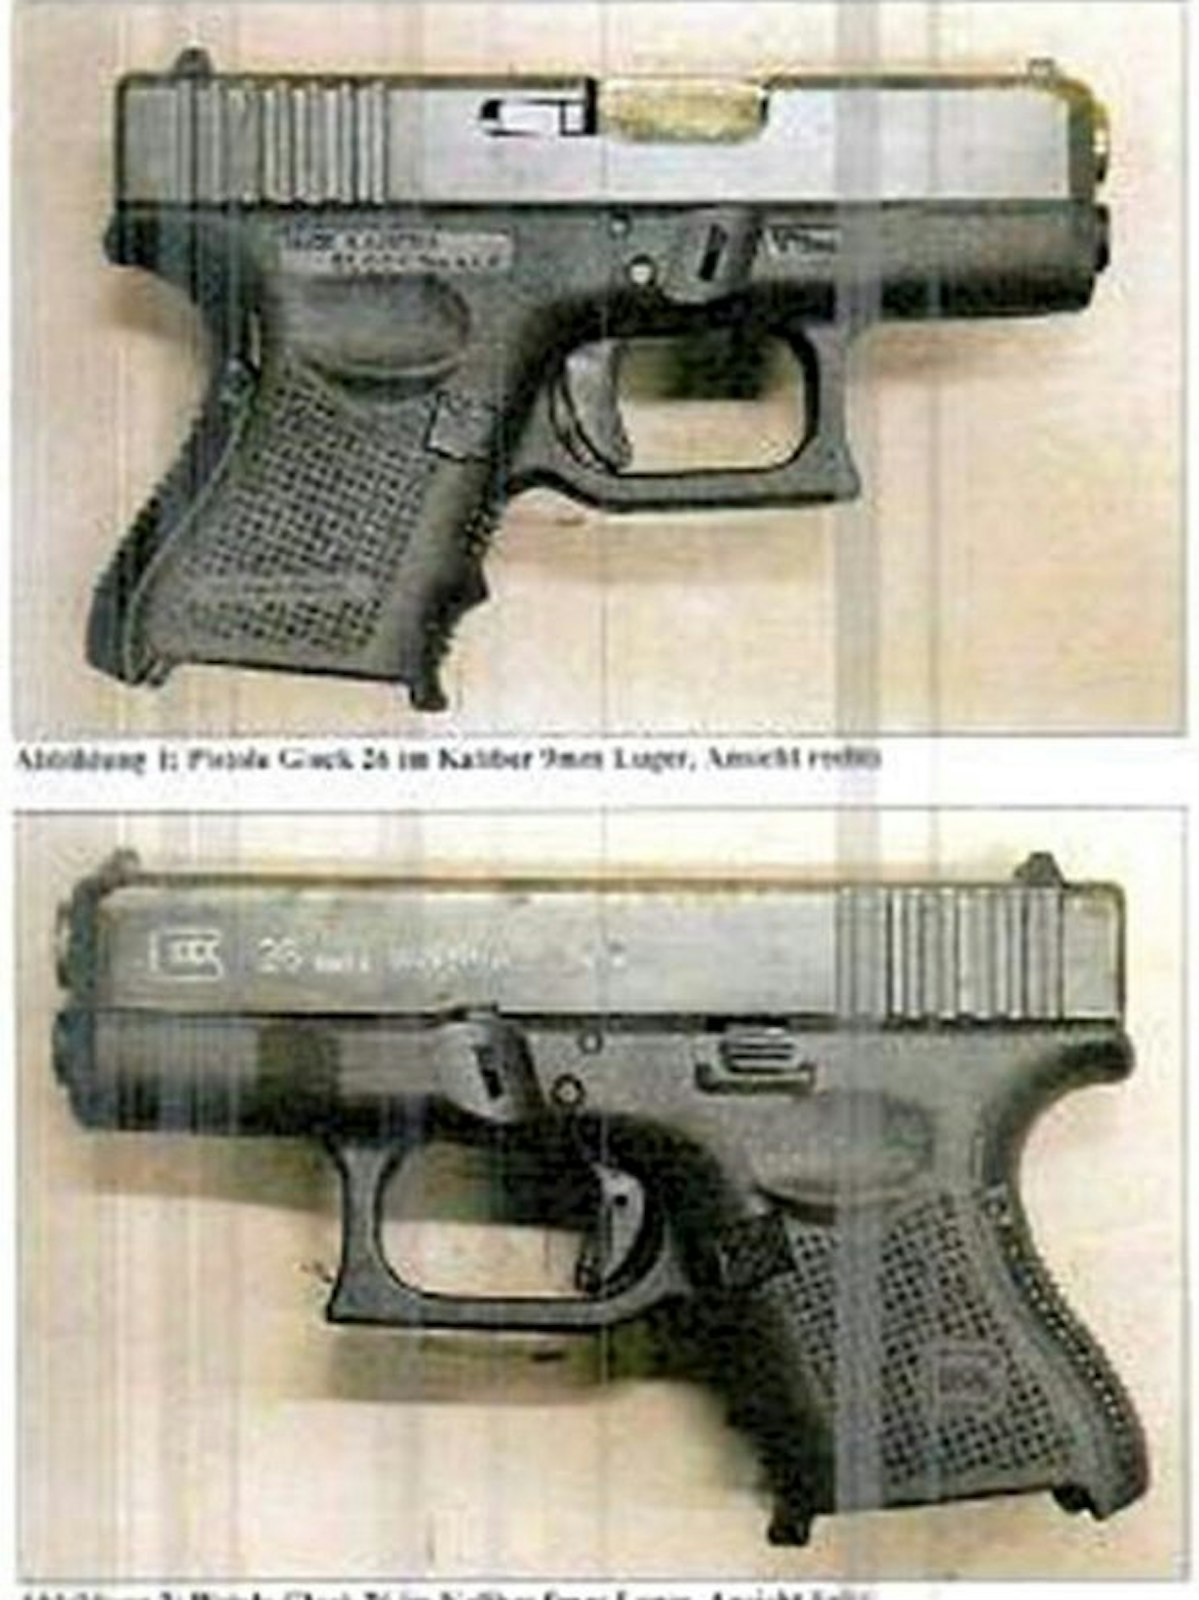 Die Pistole wurde bei einer Razzia gegen die Mafia sichergestellt.